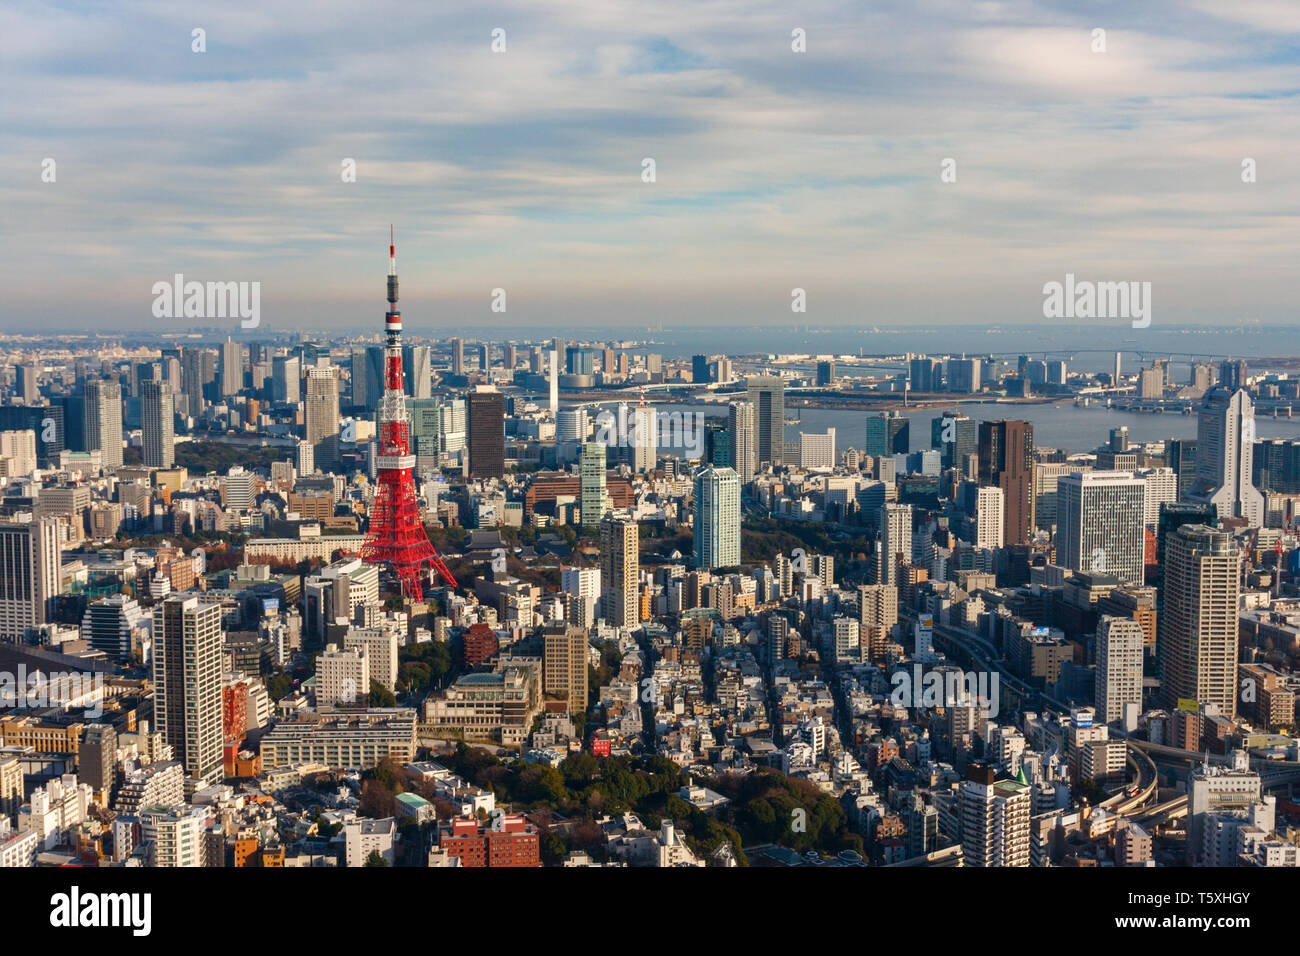 Vista aerea dello skyline di Tokyo e il reparto speciale minato in città con la Torre di Tokyo e innumerevoli grattacieli. Il Giappone. Foto Stock